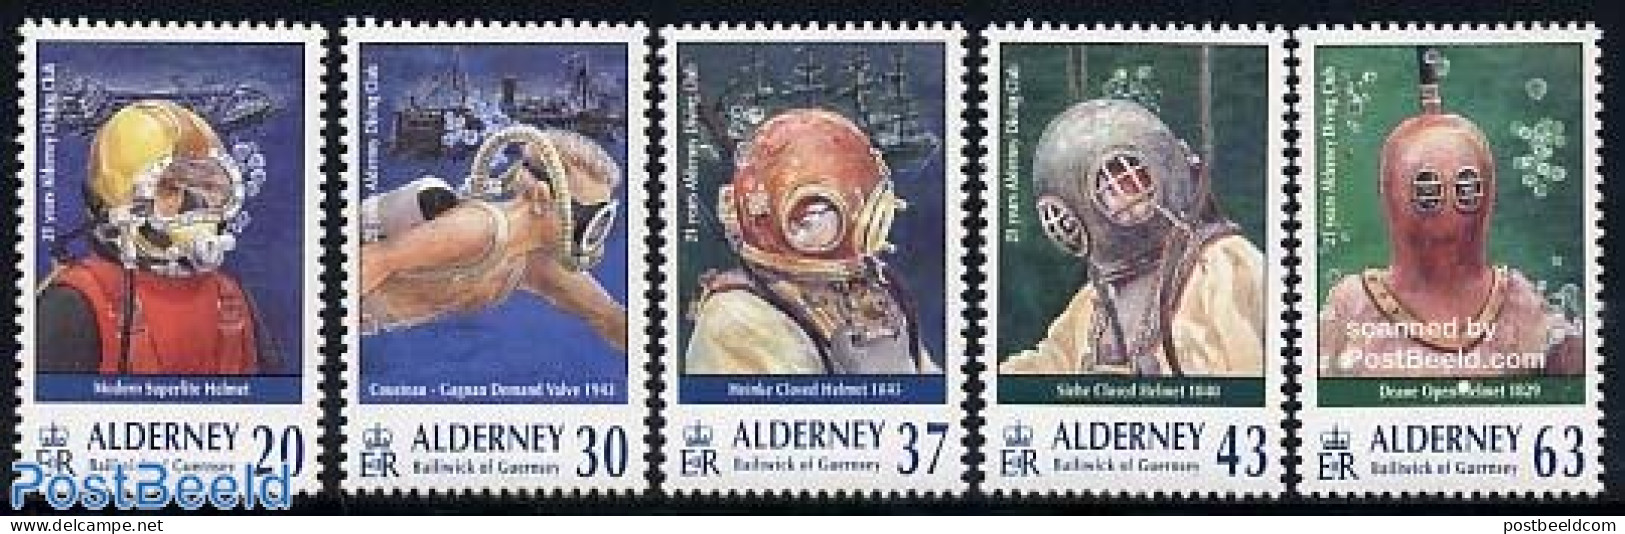 Alderney 1998 Diving Club 5v, Mint NH, Sport - Diving - Buceo